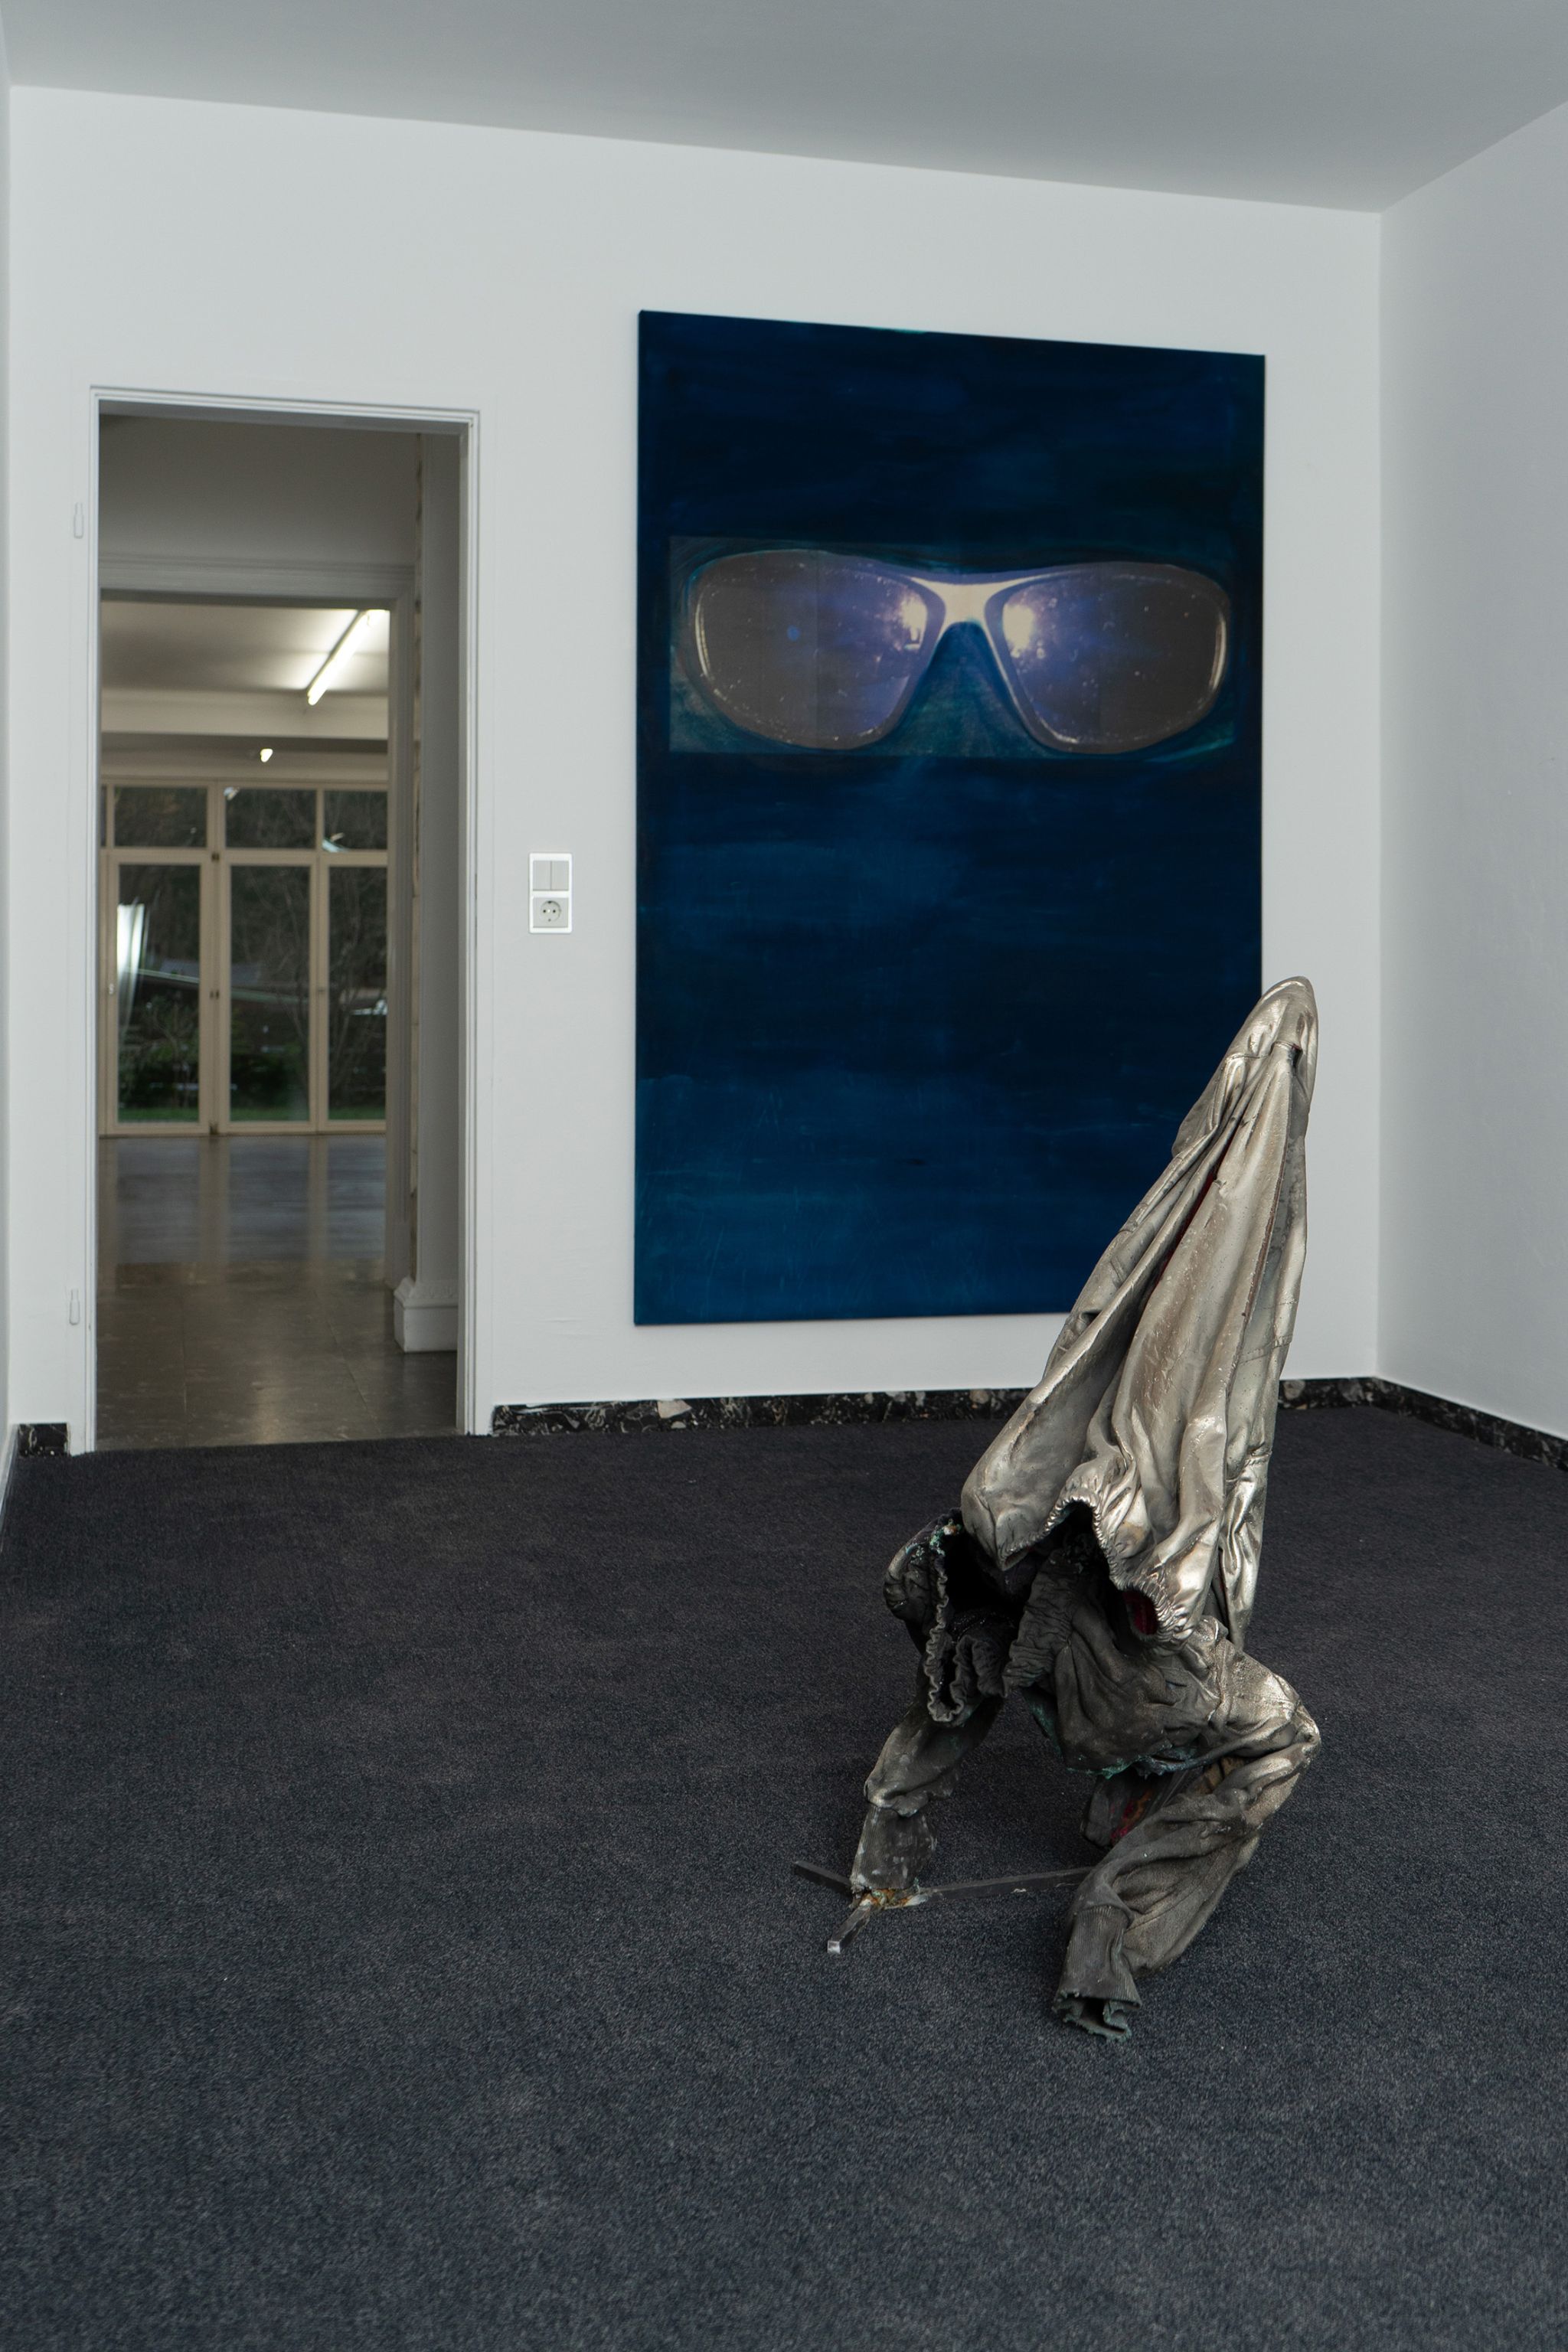 Installation view, Tobias Spichtig, Spring 2019, Deborah Schamoni, 2019